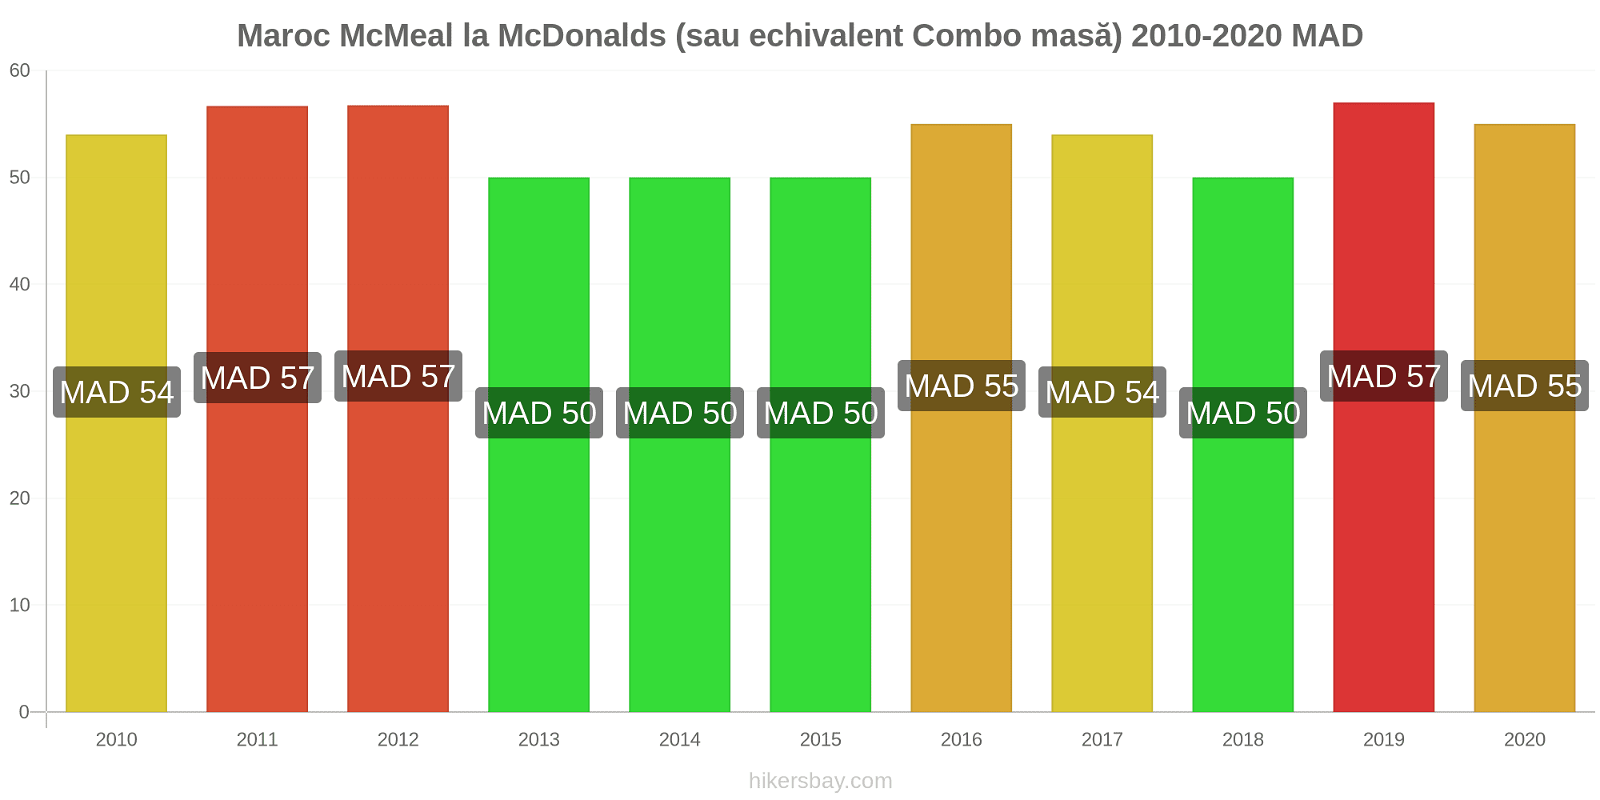 Maroc modificări de preț McMeal la McDonalds (sau echivalent Combo masă) hikersbay.com